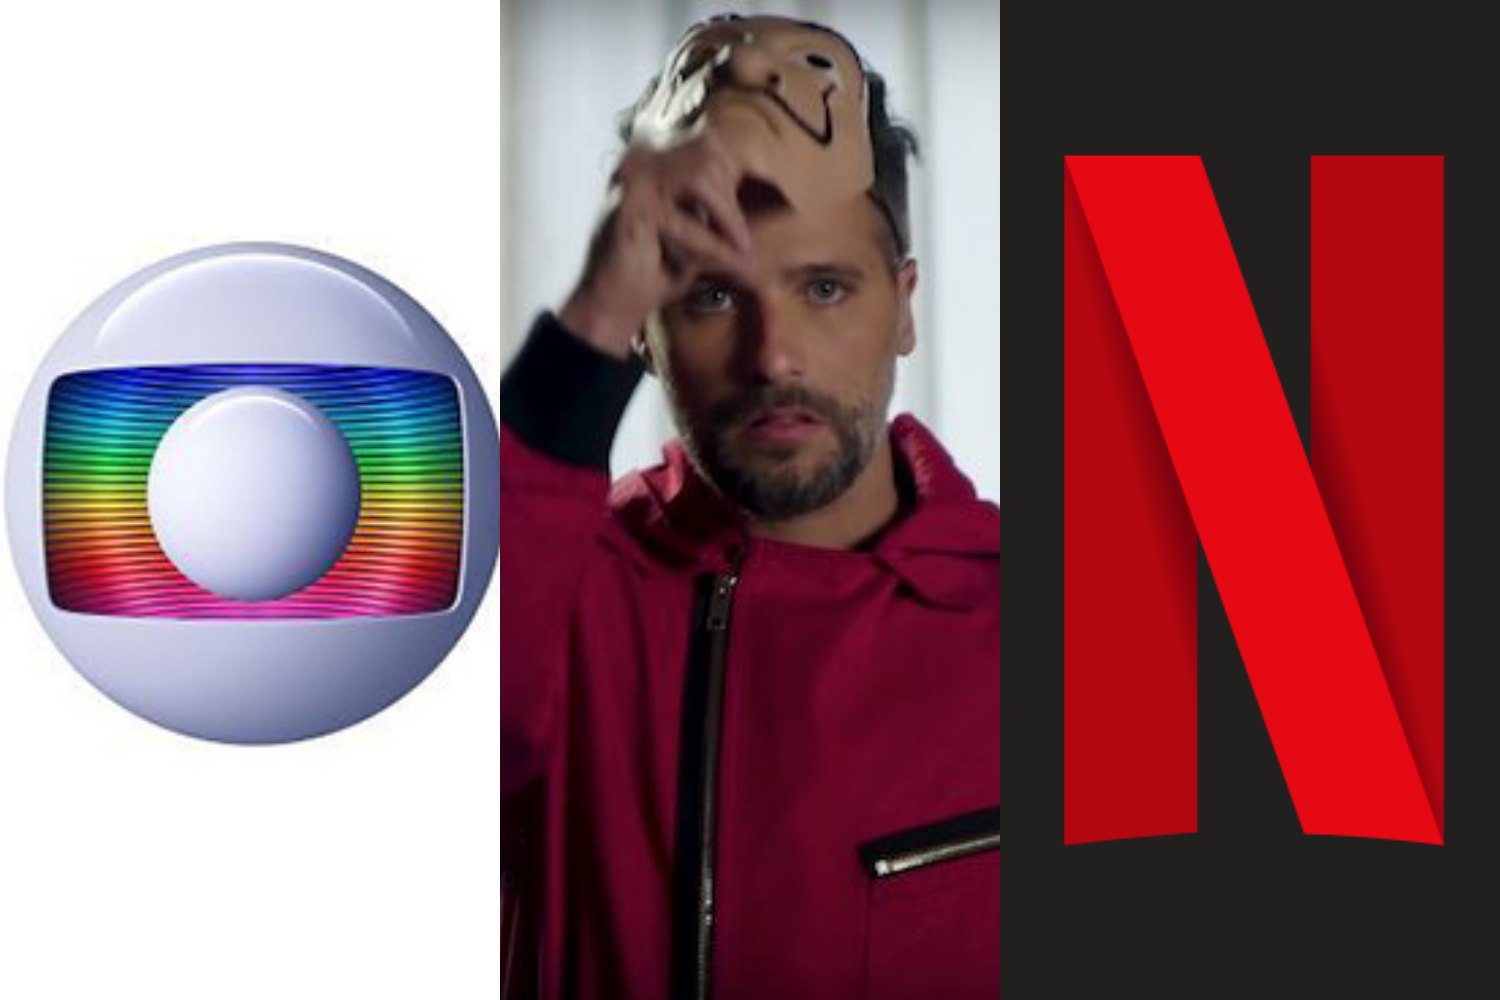 Globo e Netflix travam disputa debochada após saída de Bruno Gagliasso. Foto: Reprodução